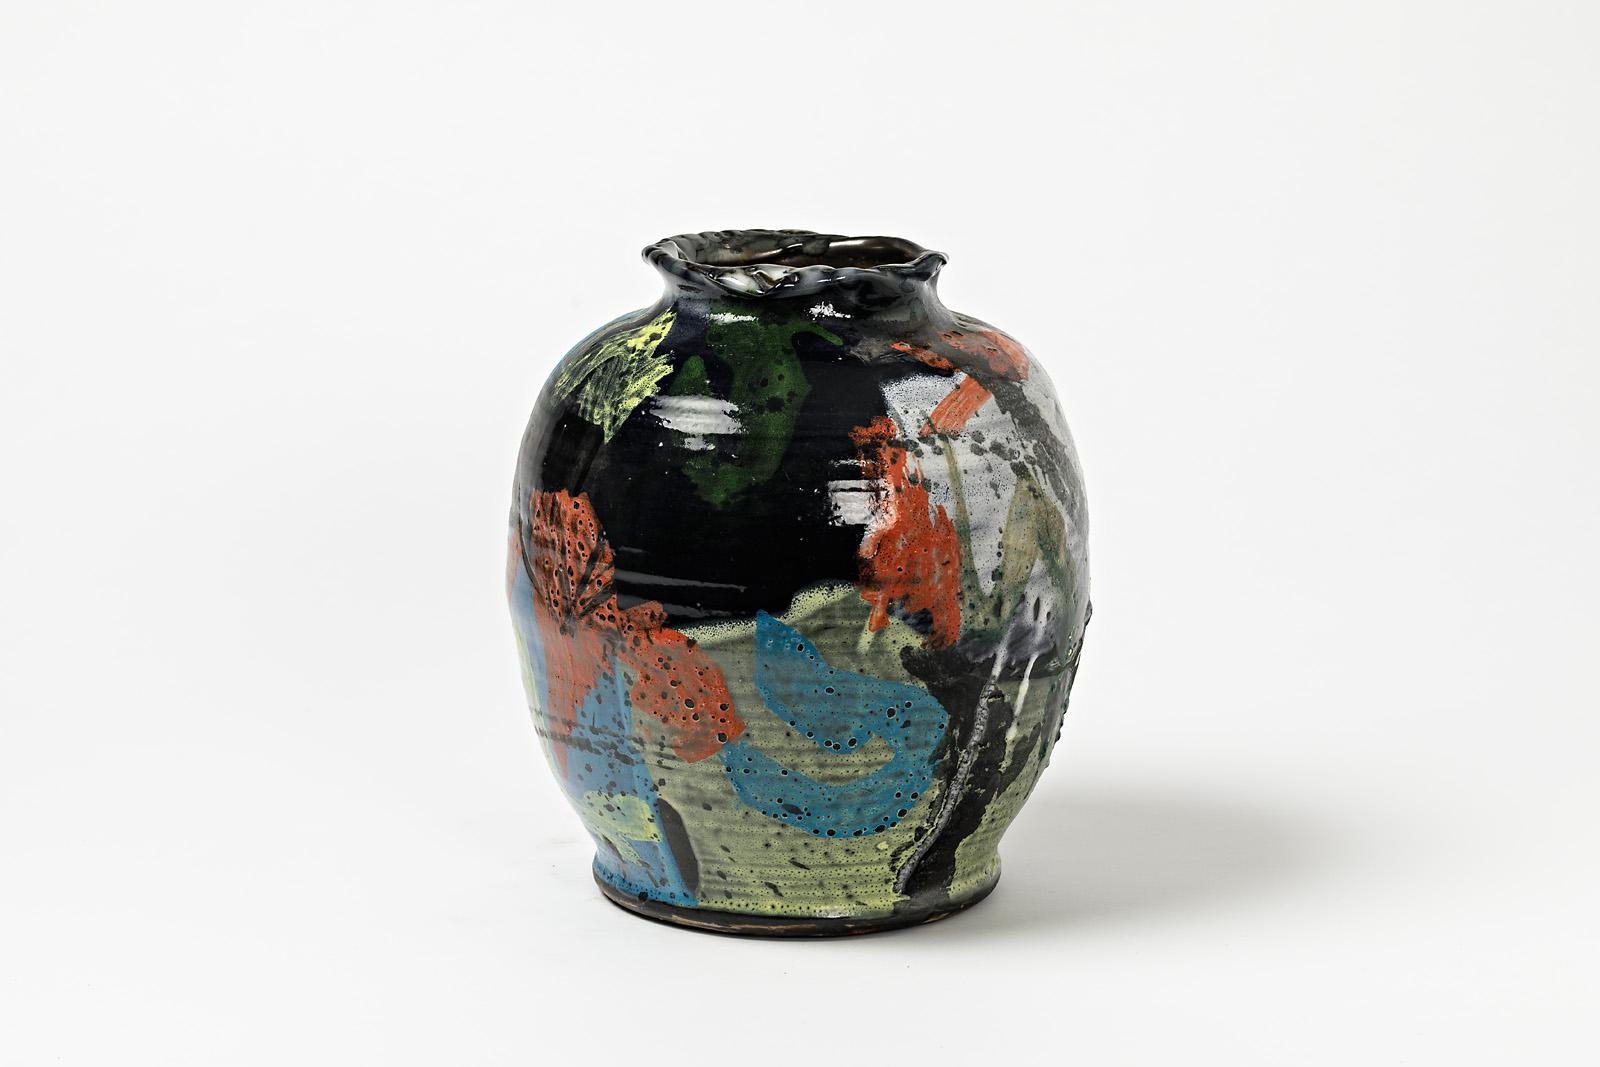 Un vase en céramique à décor d'émaux de Michel Lanos (1926-2005).
Décorations originales parfaites.
Monogramme de l'artiste sous la base,
vers 1990.
Pièce unique.